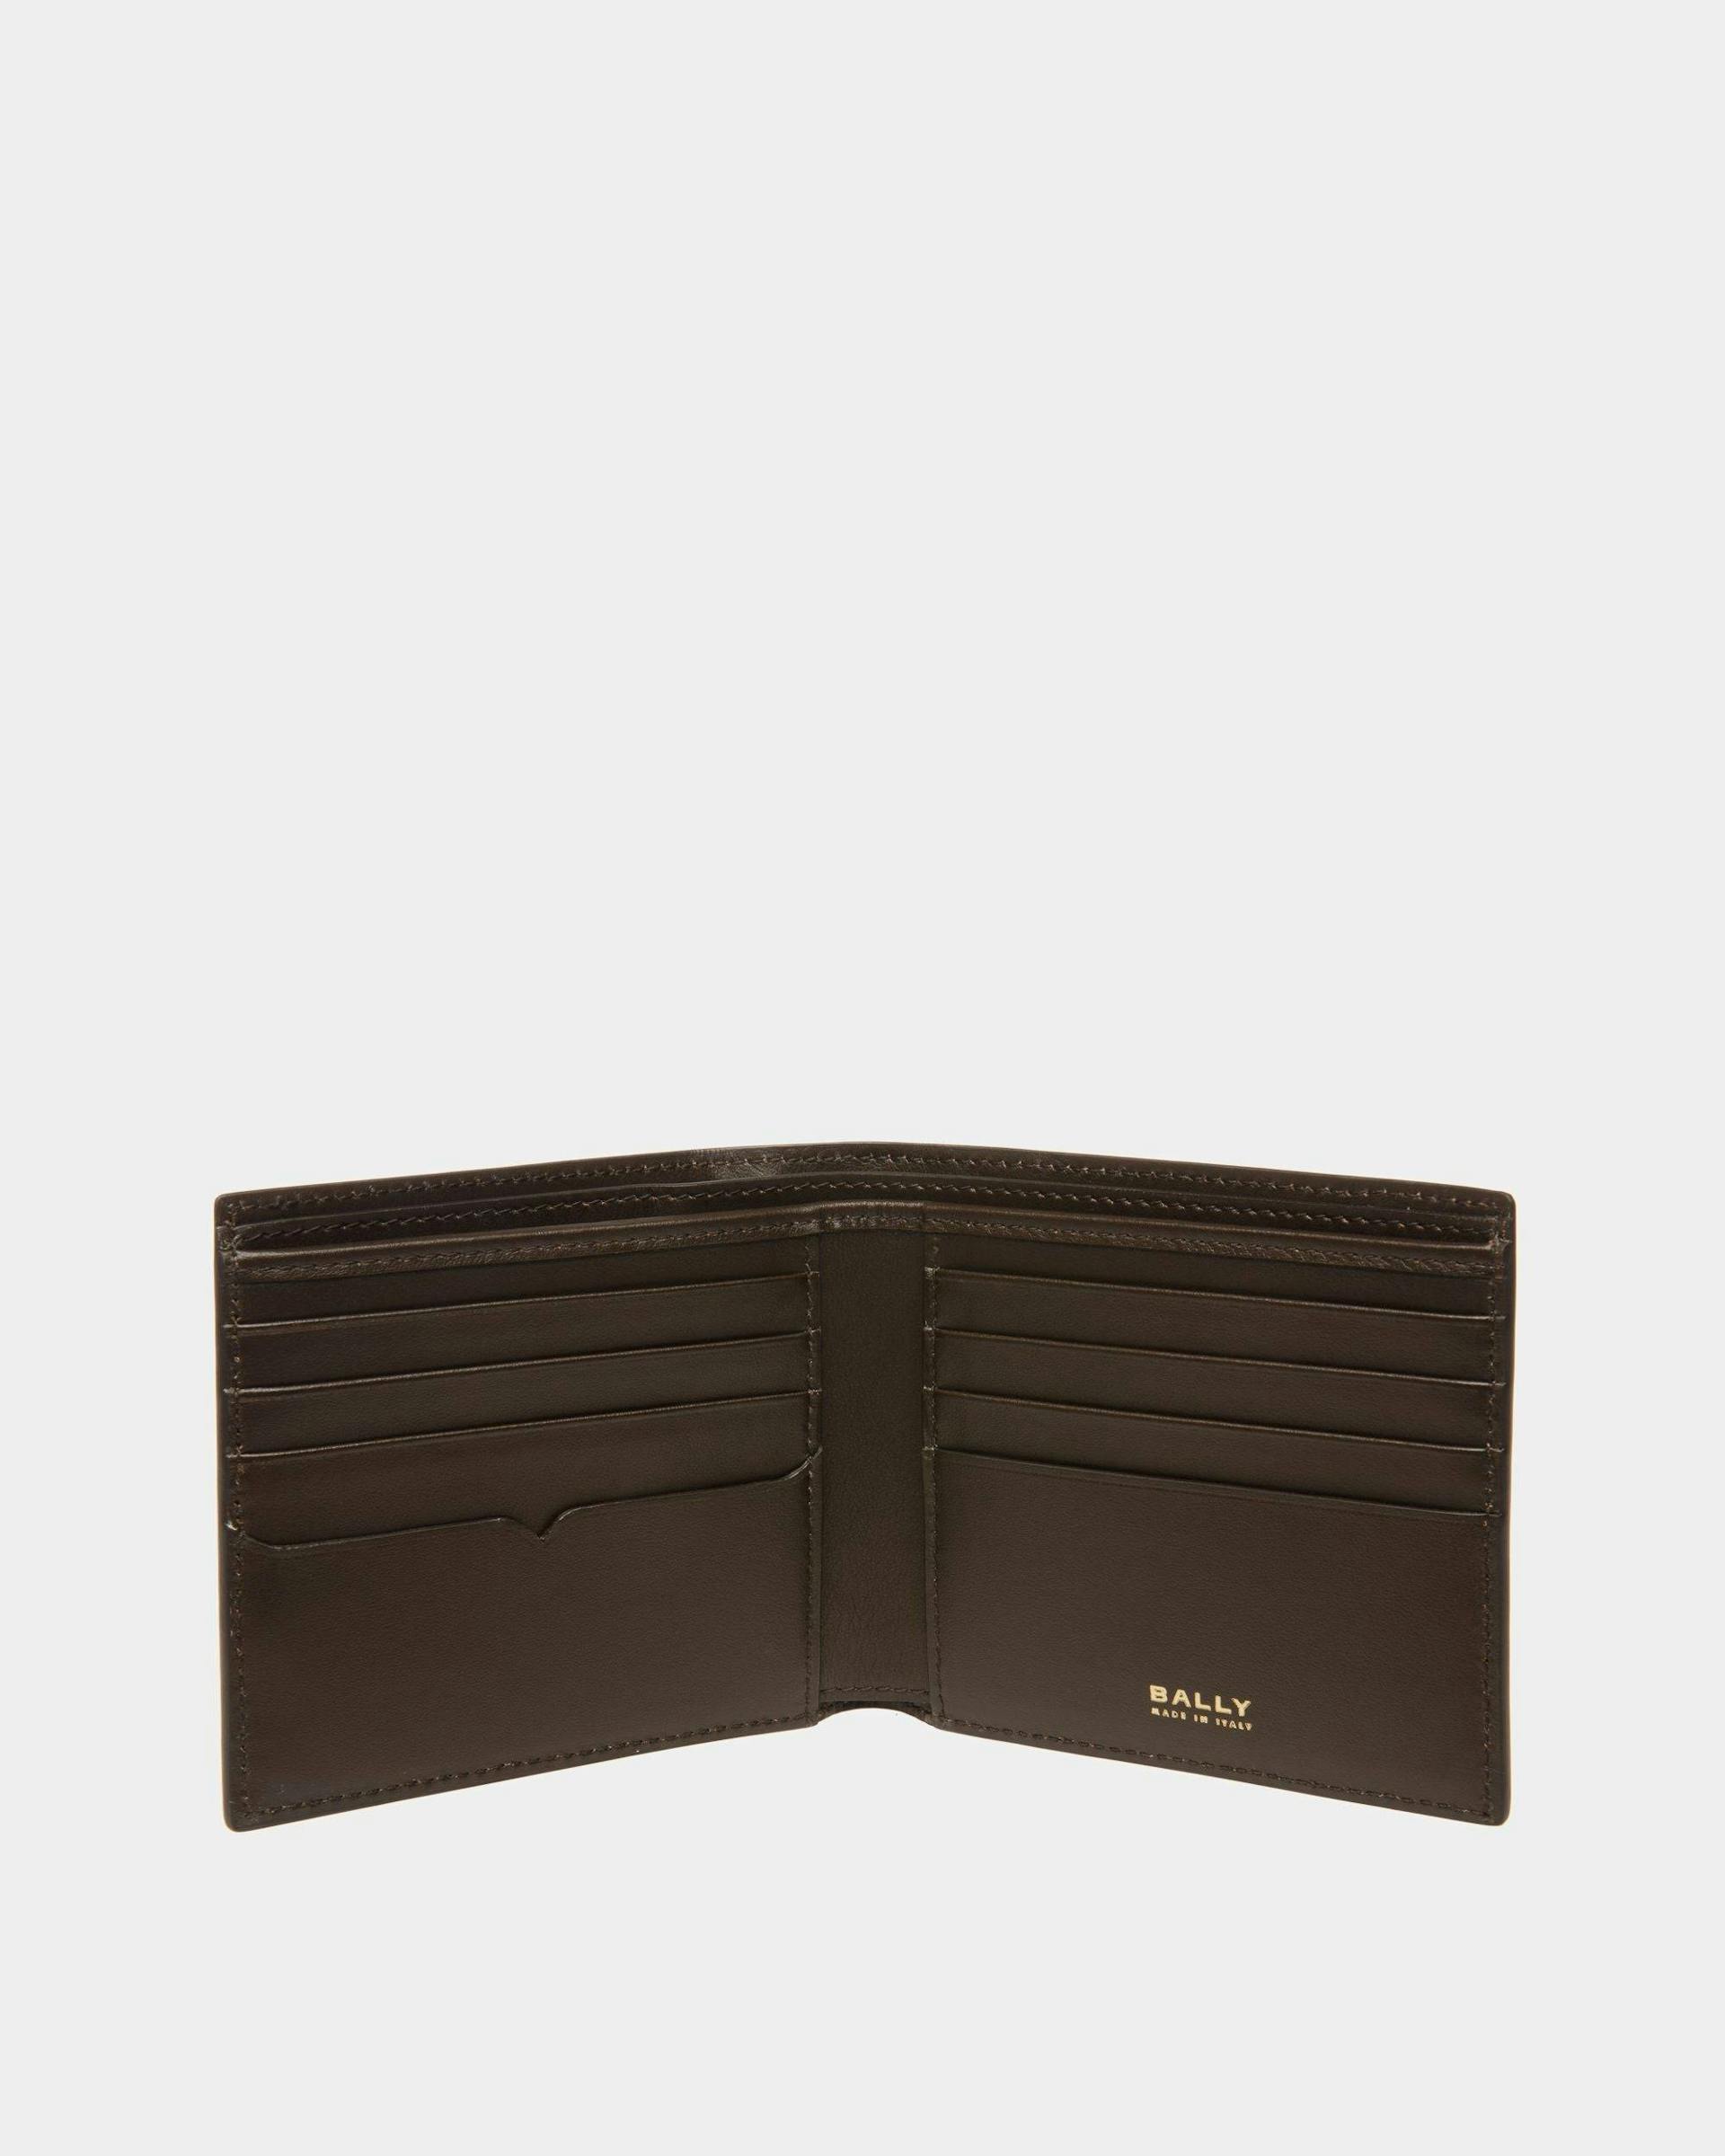 Speciale Bi-fold Wallet In Brown Leather - Men's - Bally - 03